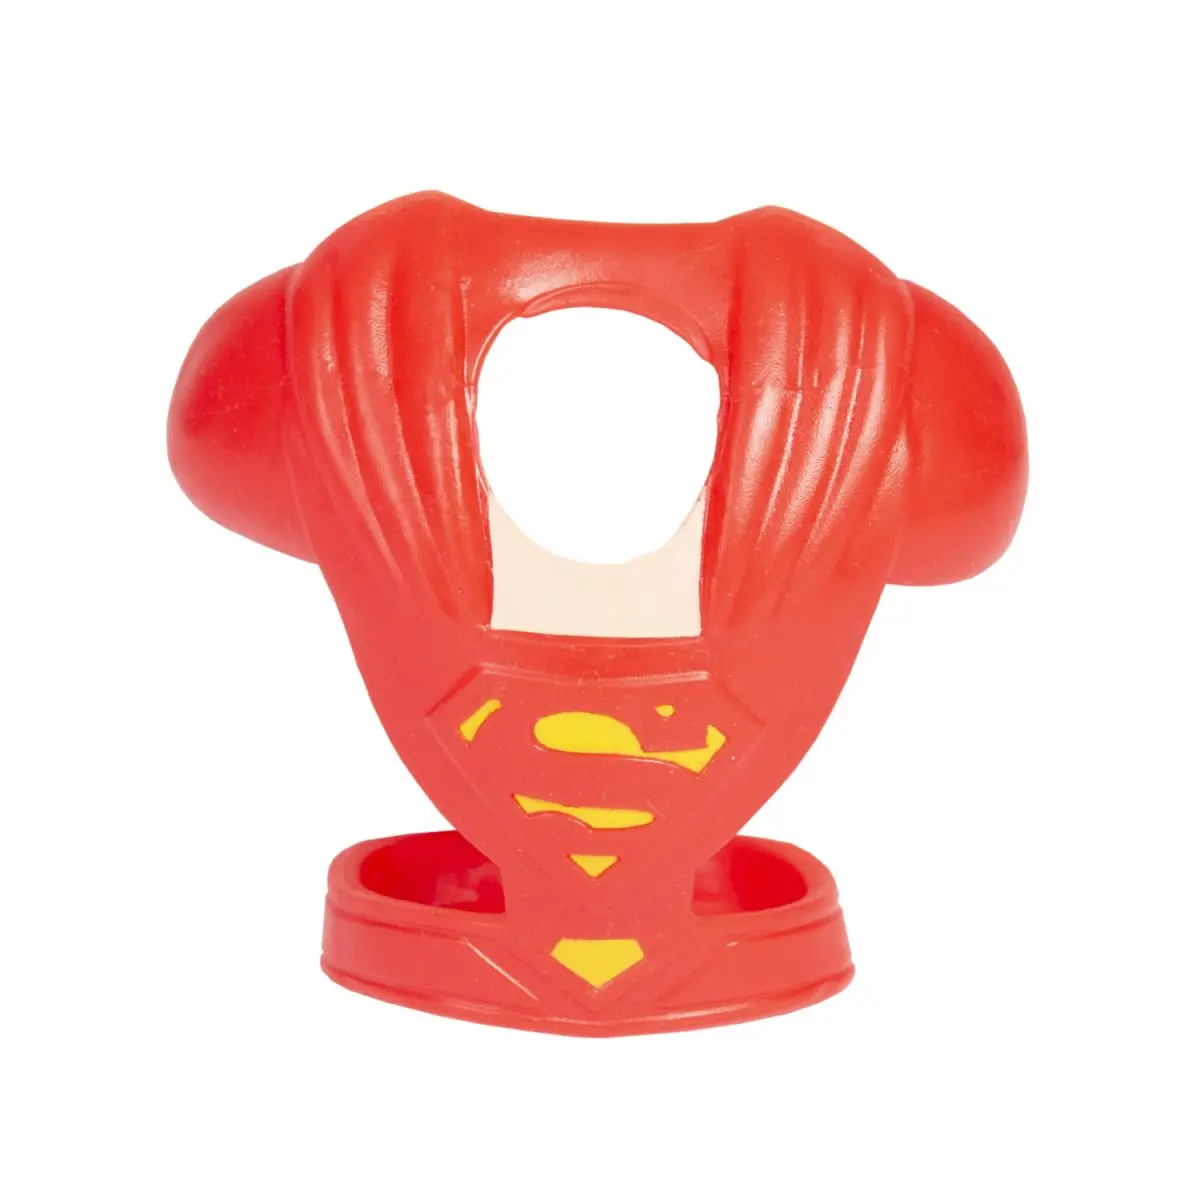 Тянущаяся фигурка DC Superman 2.0 - фото